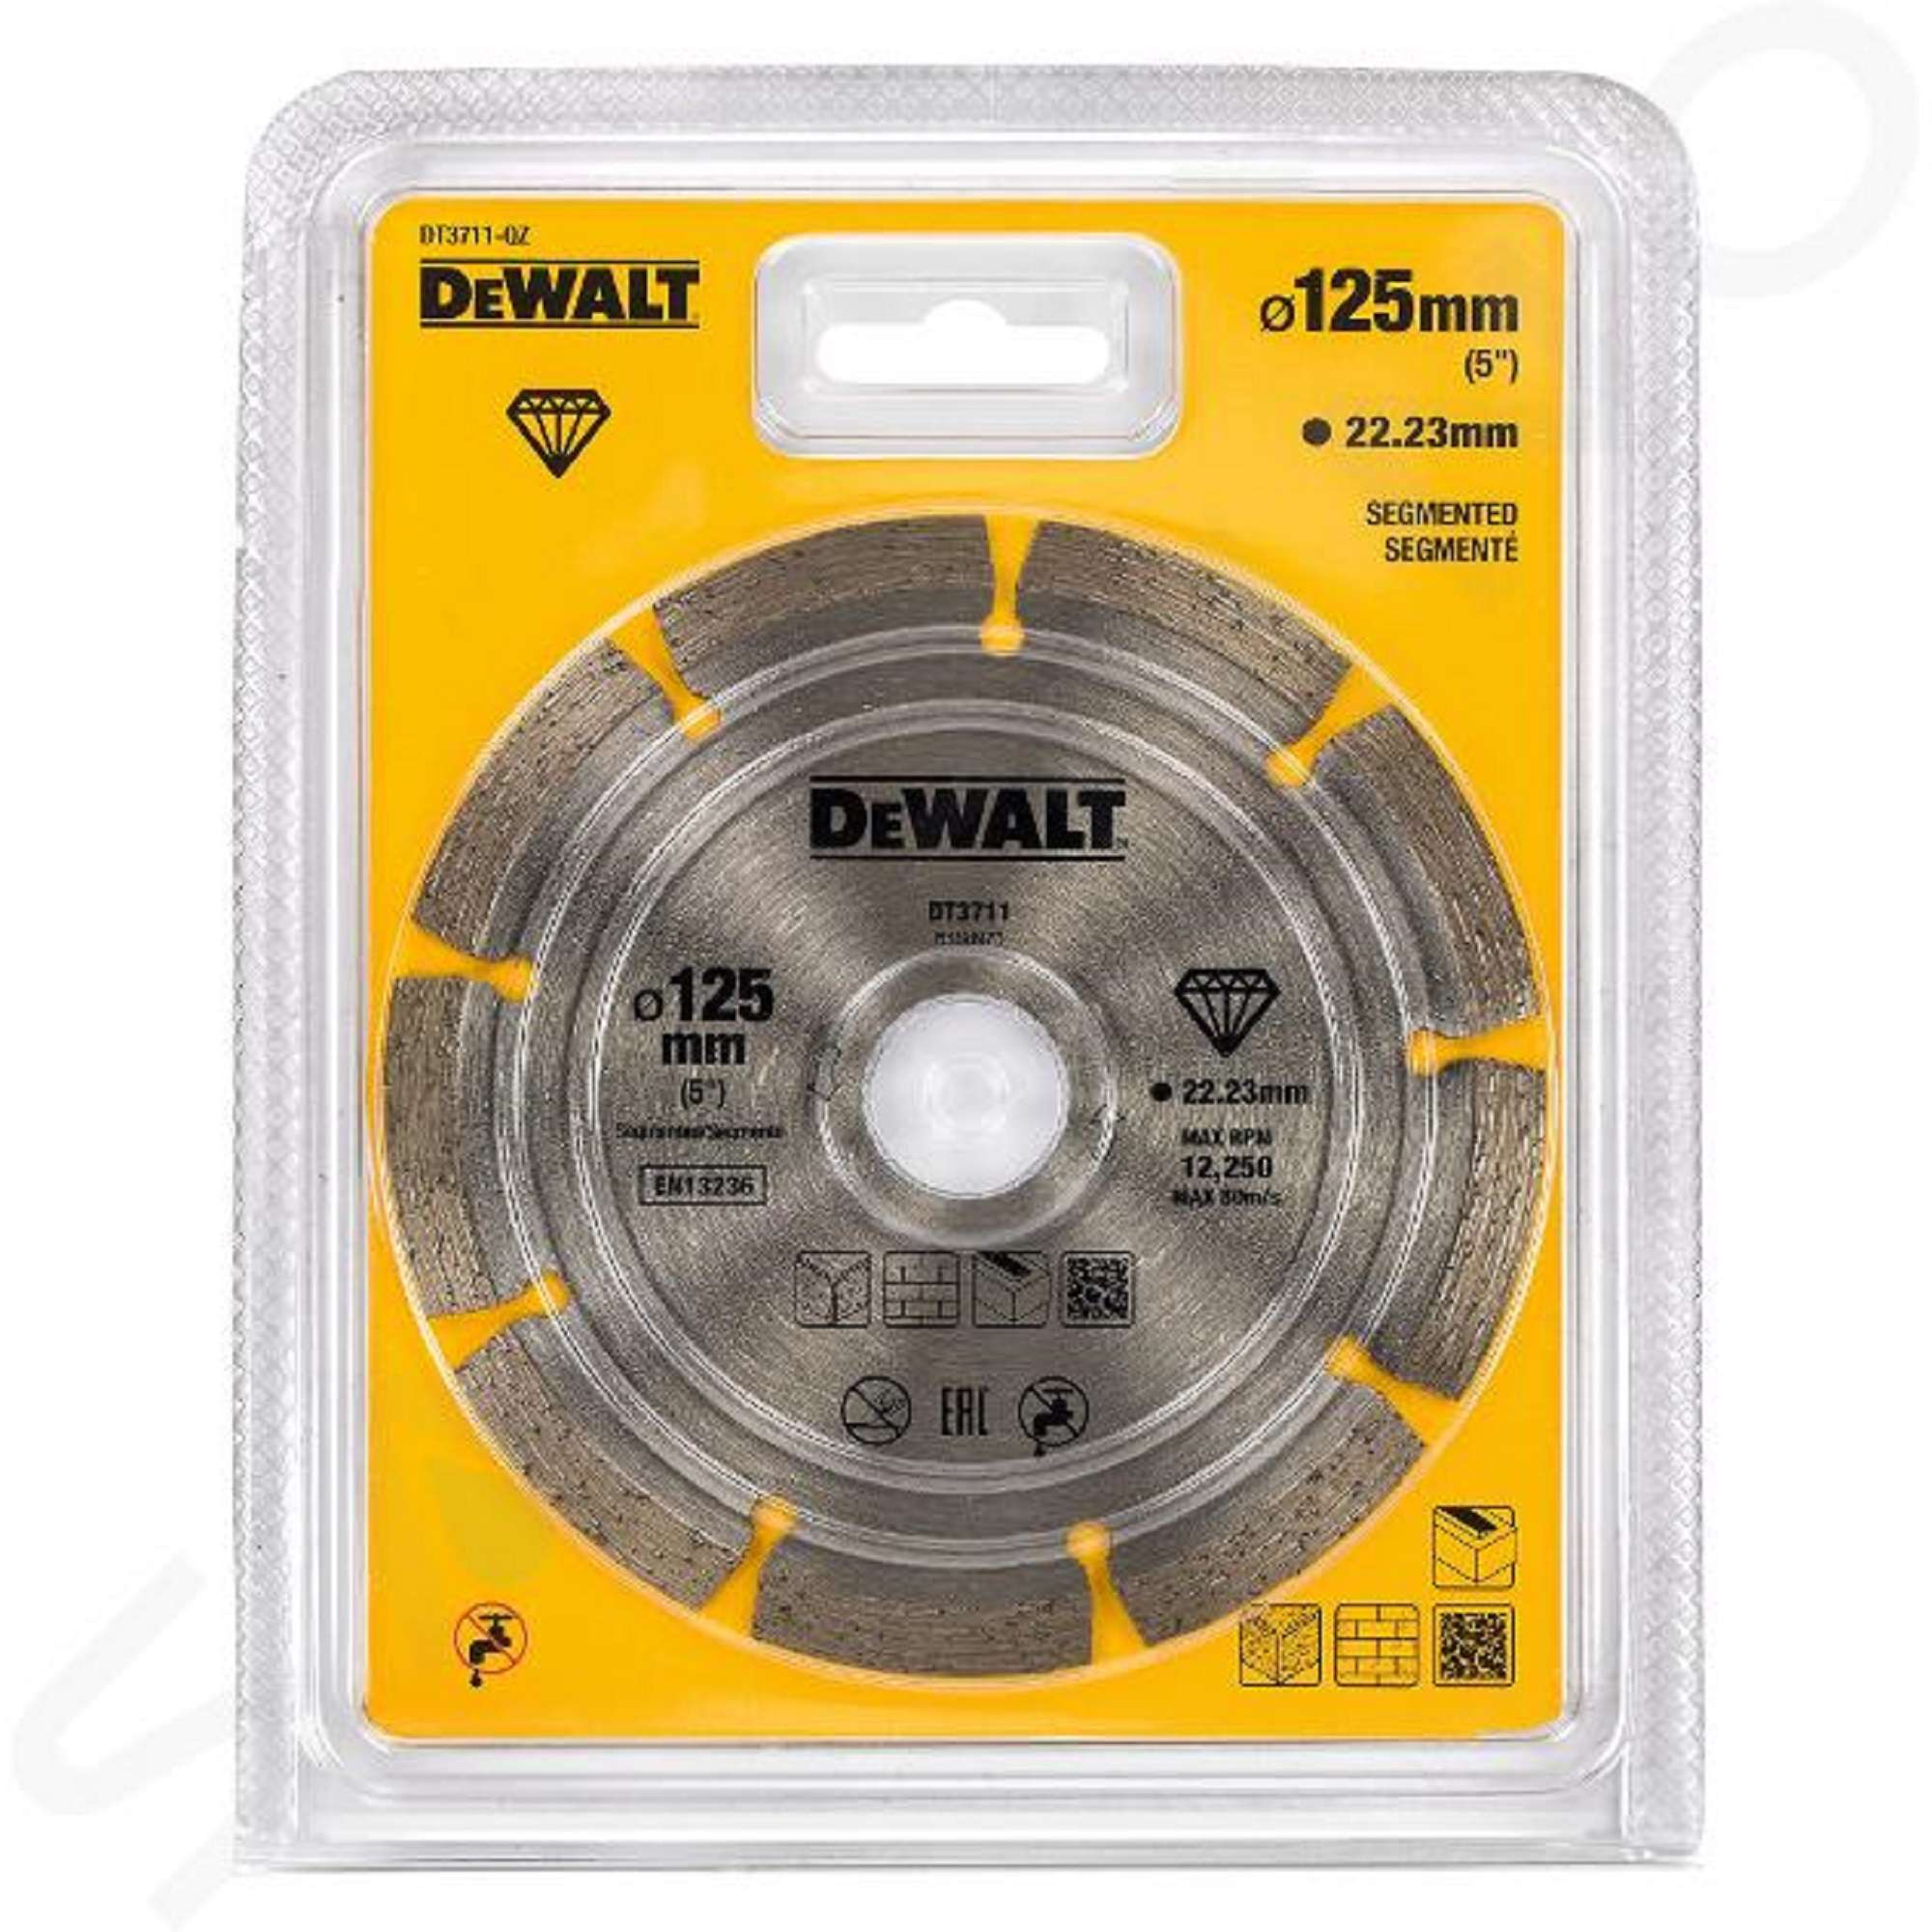 Diamond cutting disc DEWALT DT3715-QZ 110 X 20 X 8 MM